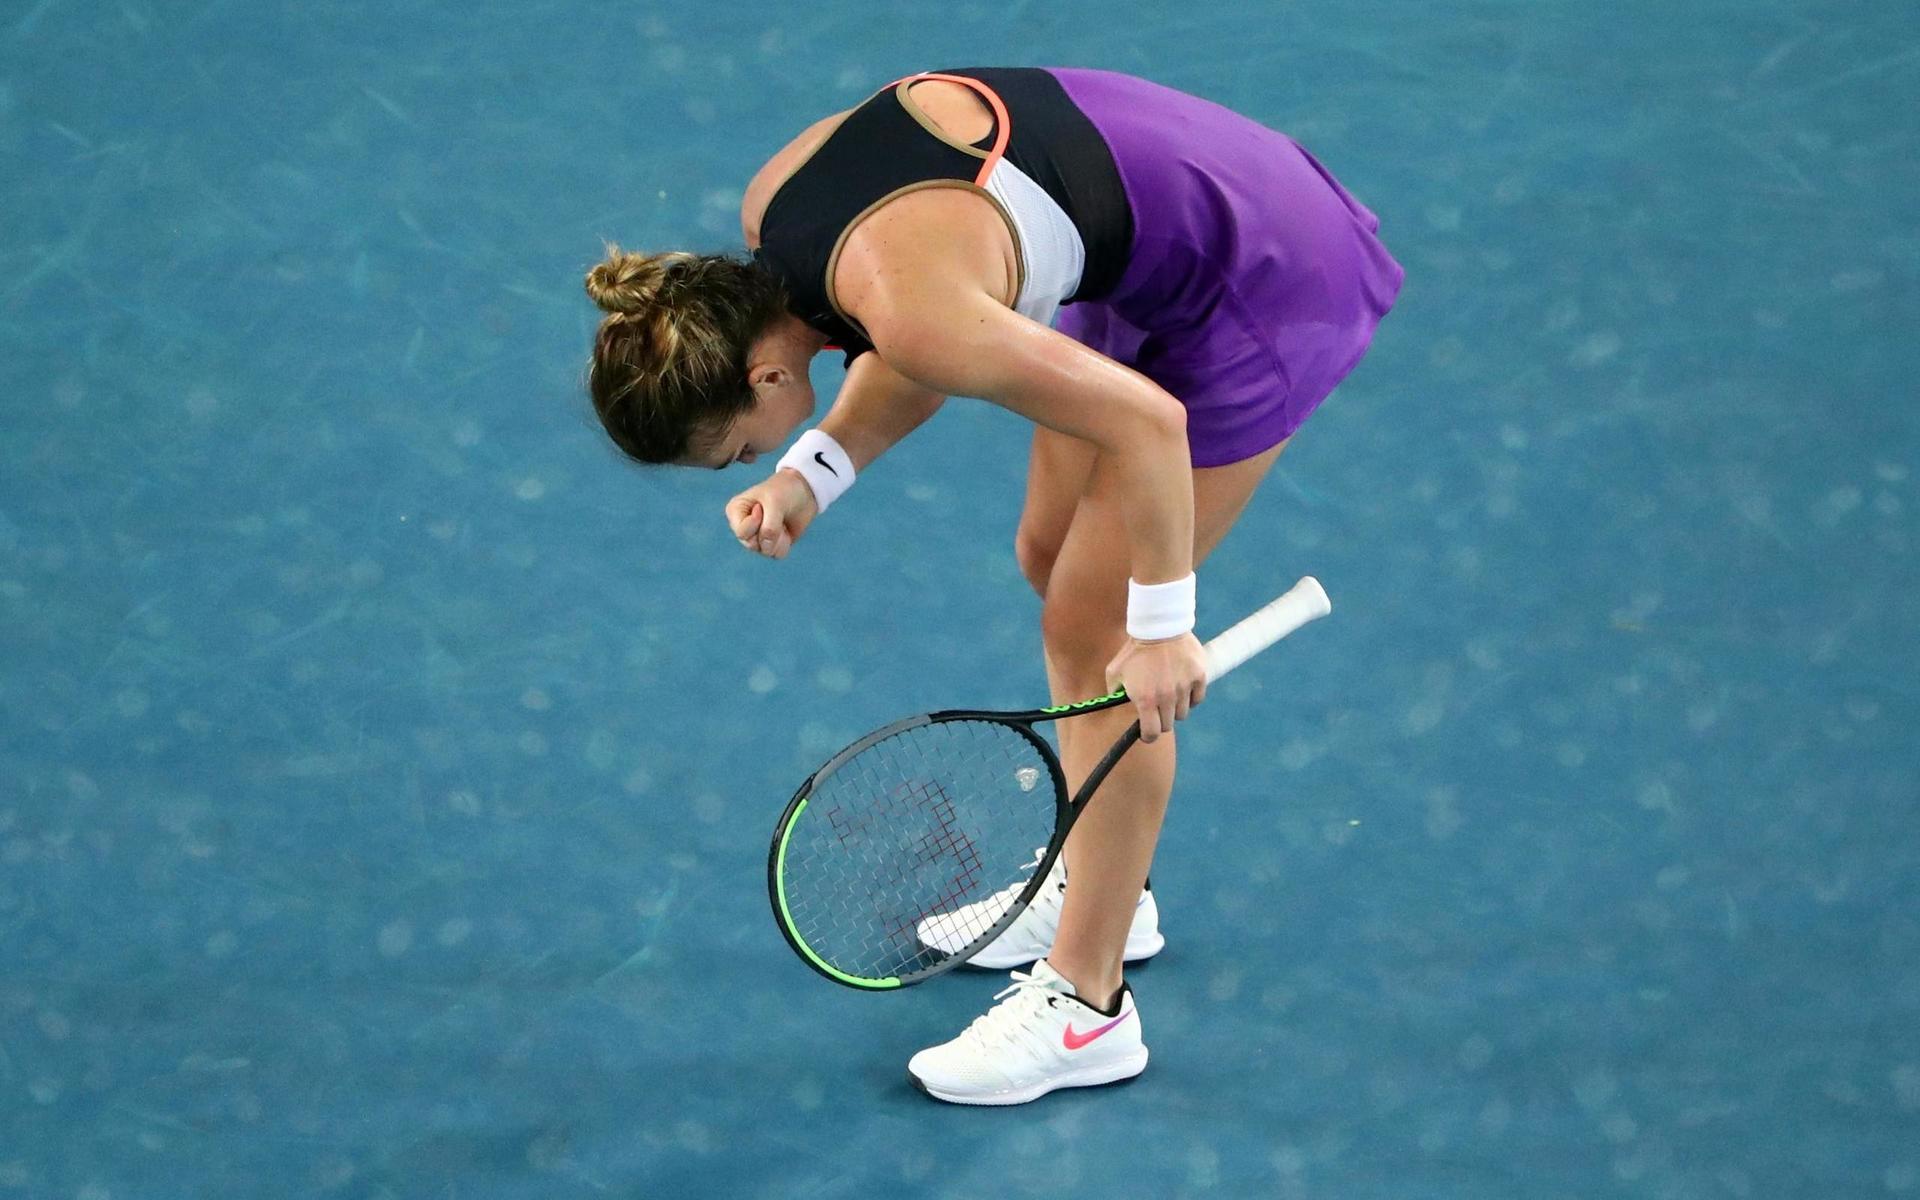 Simona Halep firar sin seger i den andra omgången av Australian Open, eller letar hon efter skalbaggar?